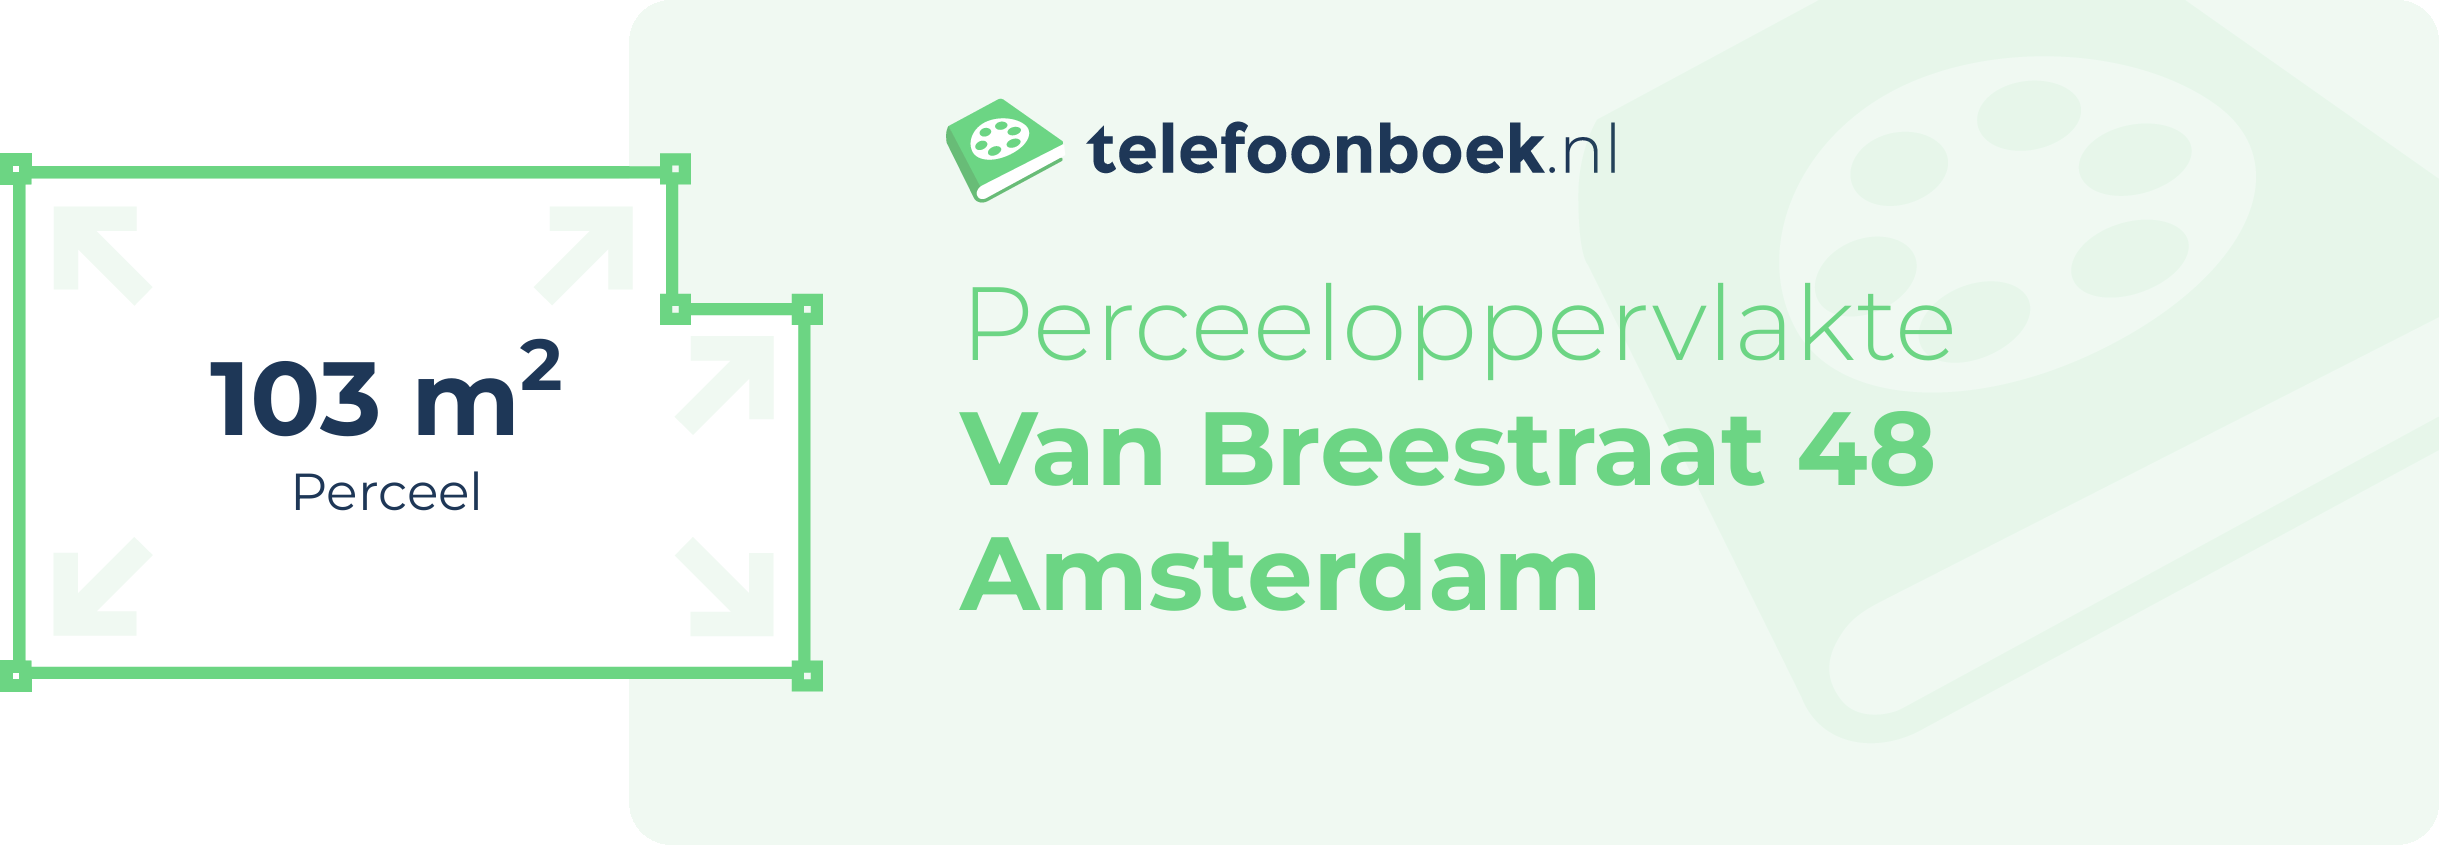 Perceeloppervlakte Van Breestraat 48 Amsterdam